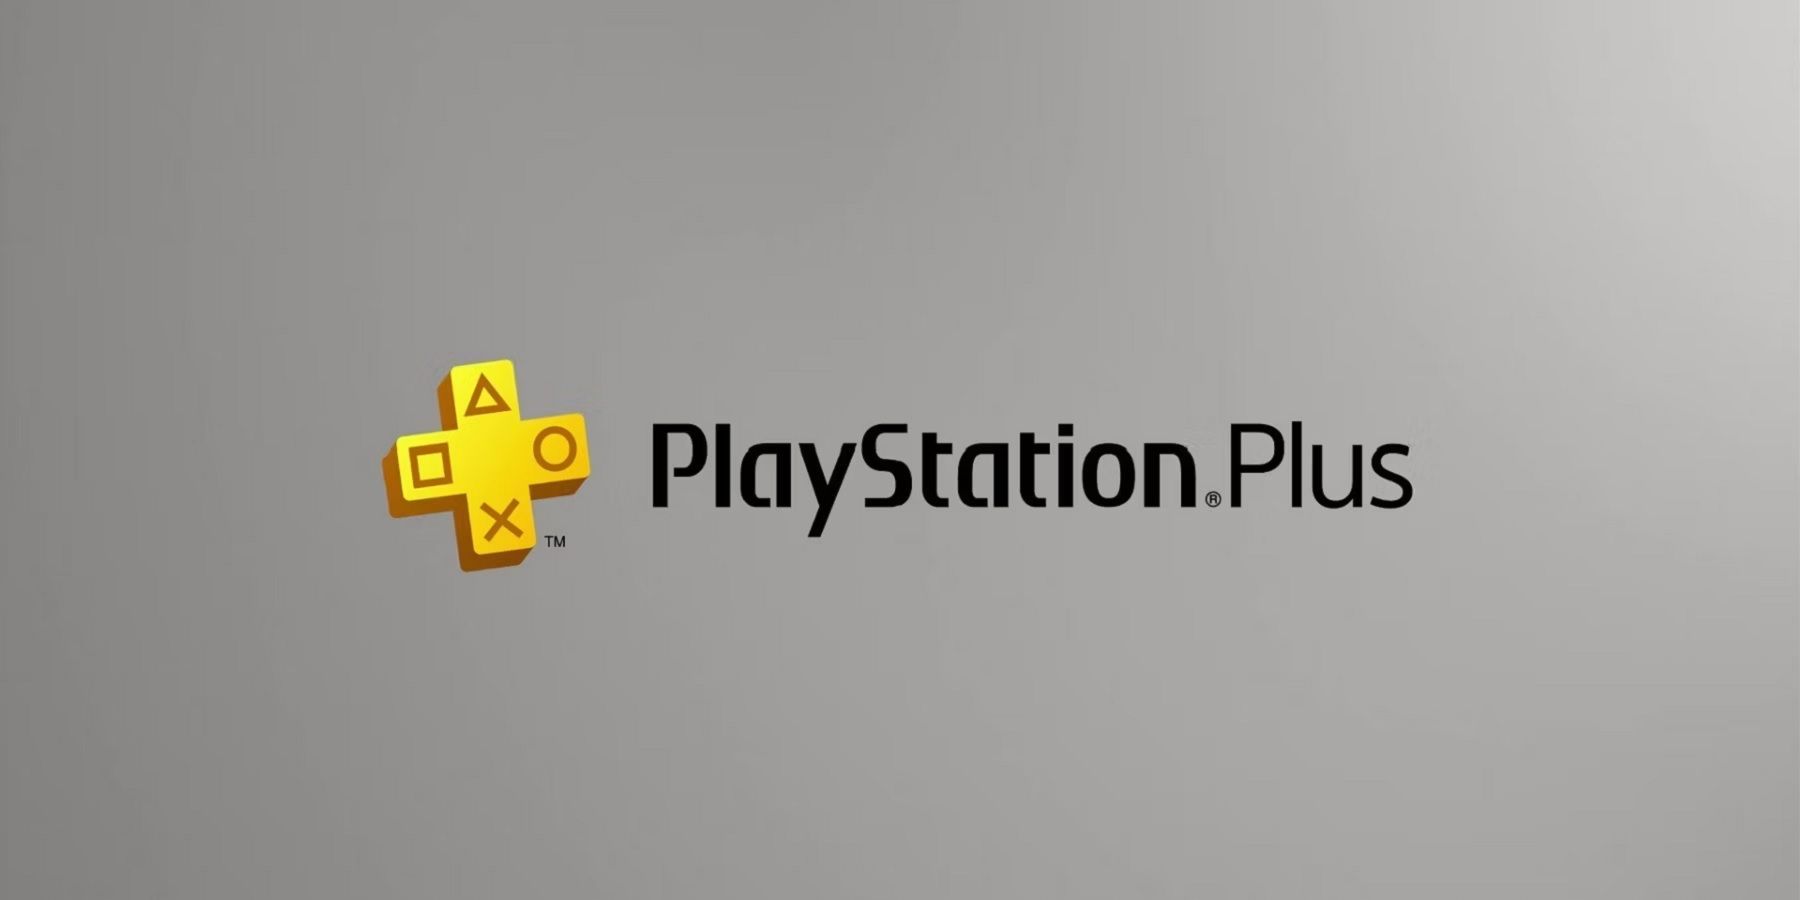 Бесплатные игры PS Plus за сентябрь 2022 г. Объявление может быть дополнительным особенным